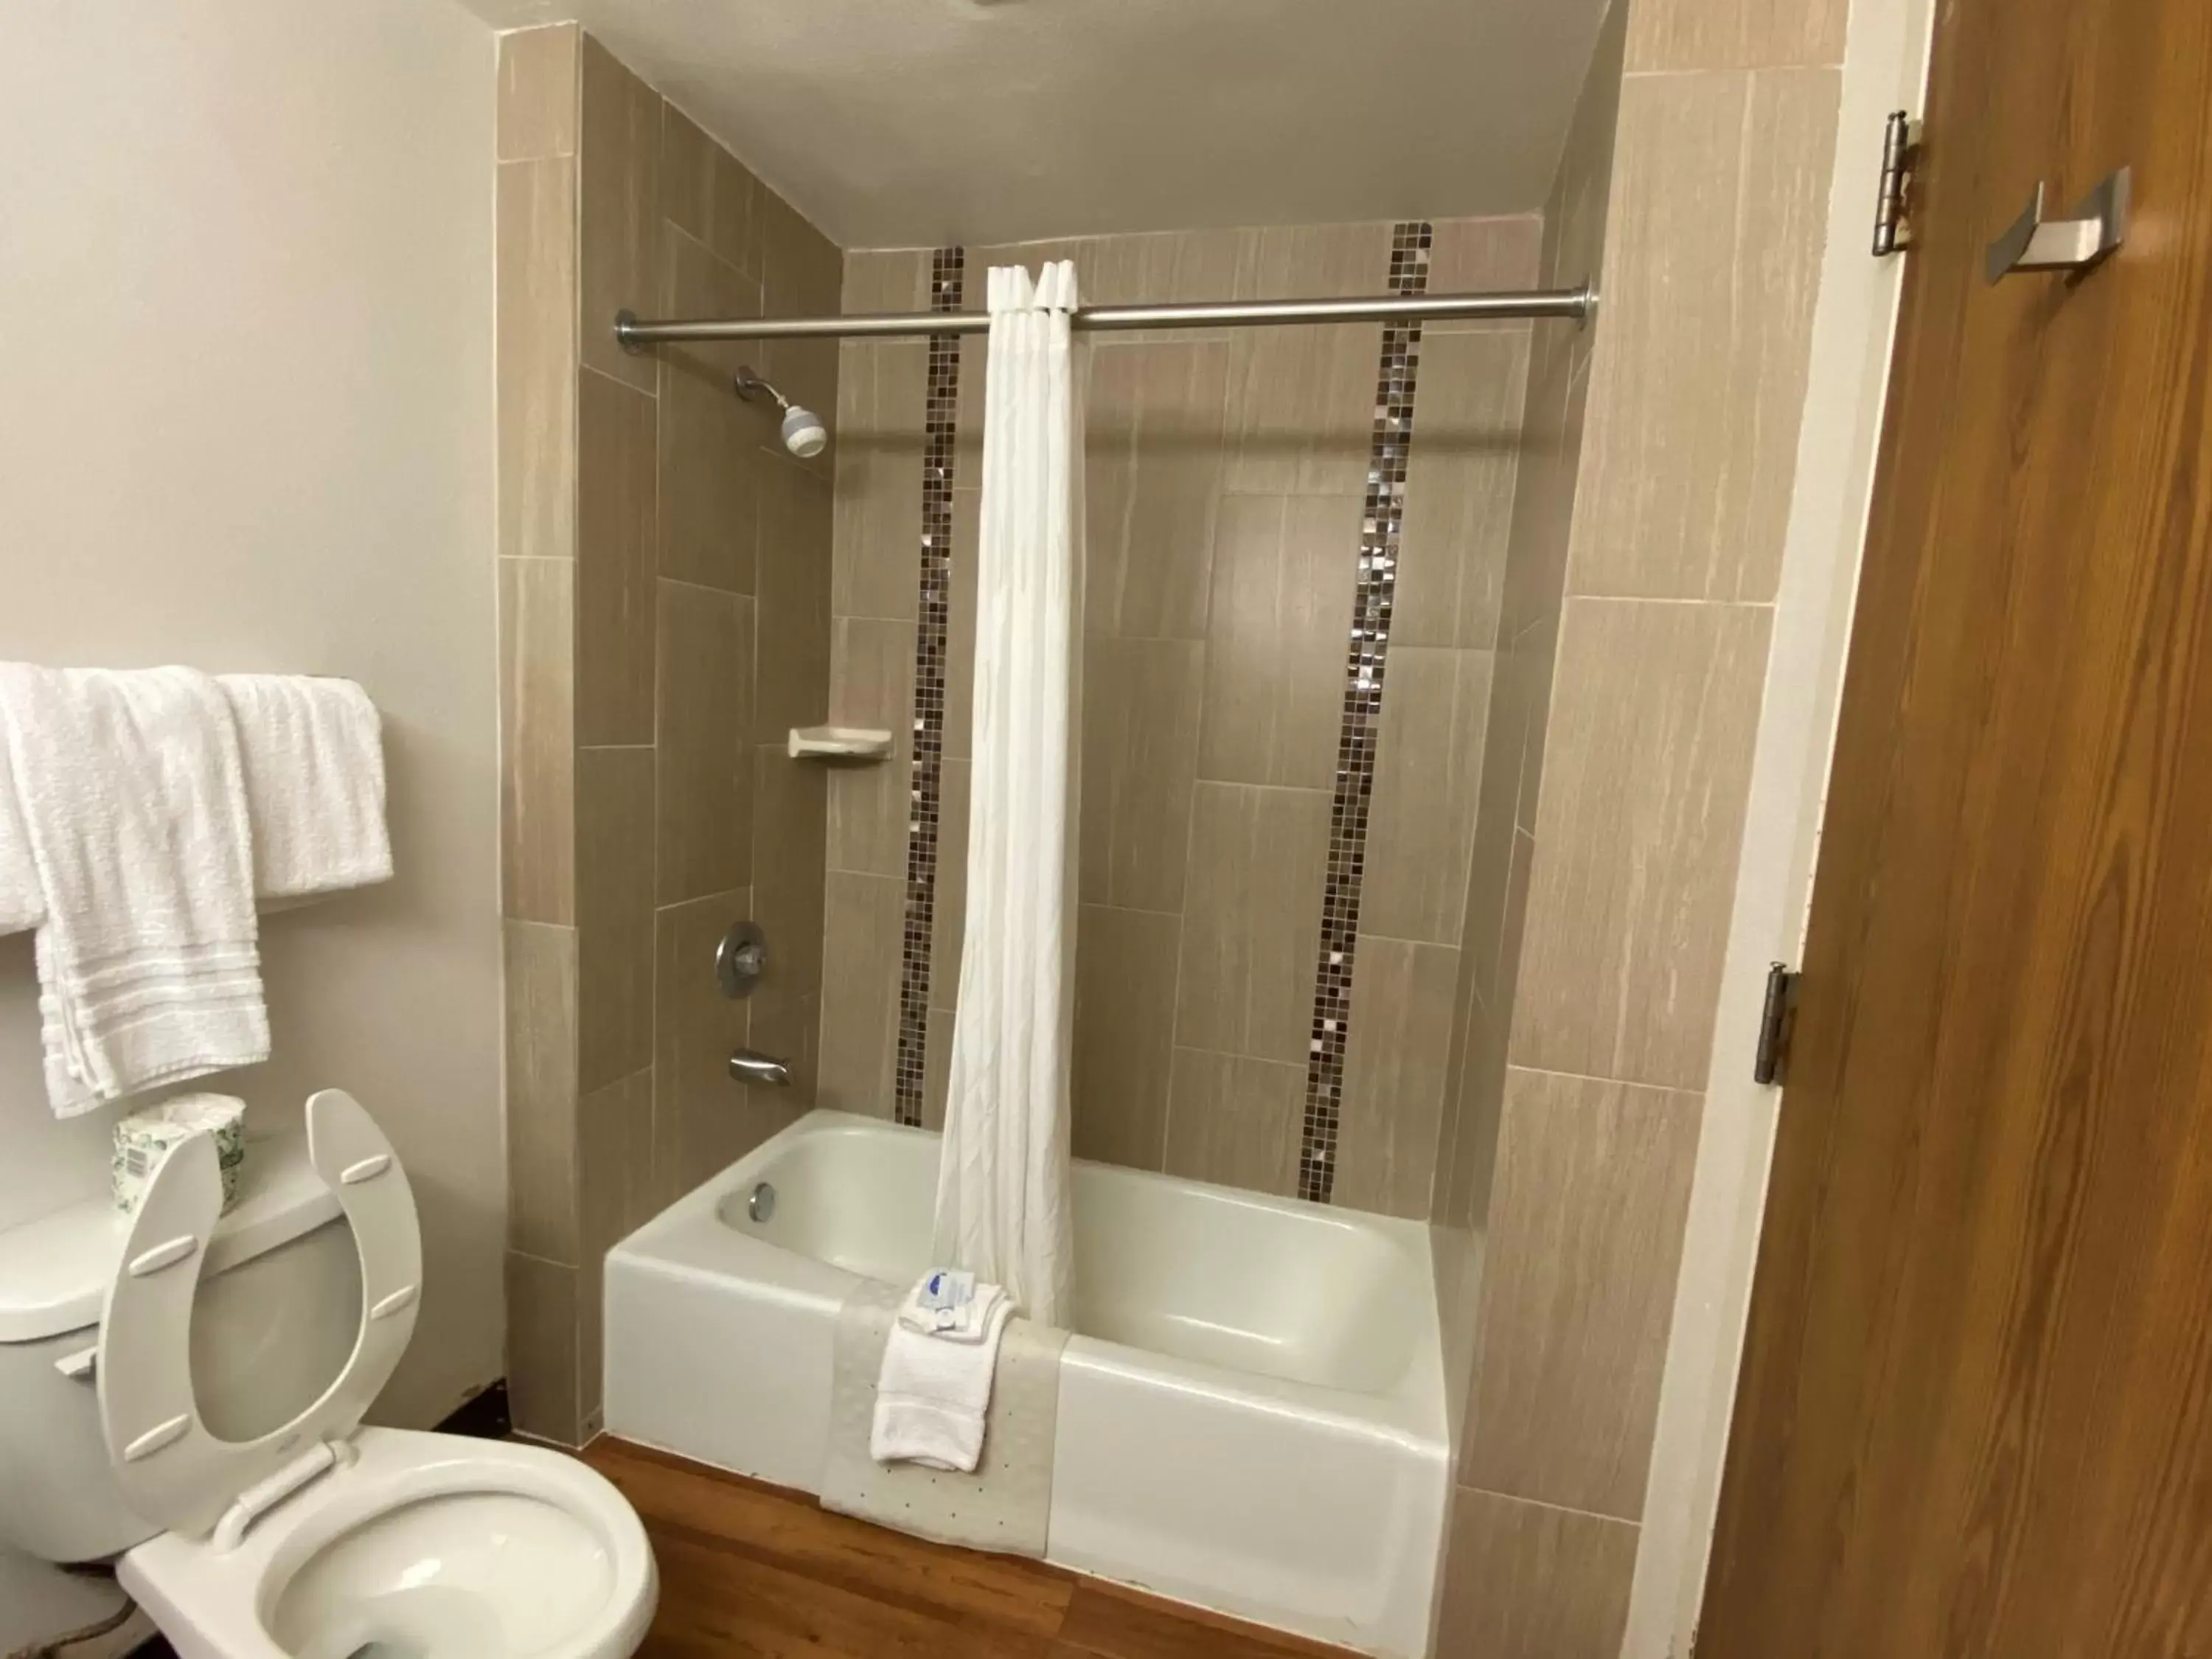 Bathroom in Guest House Inn Medical District near Texas Tech Univ